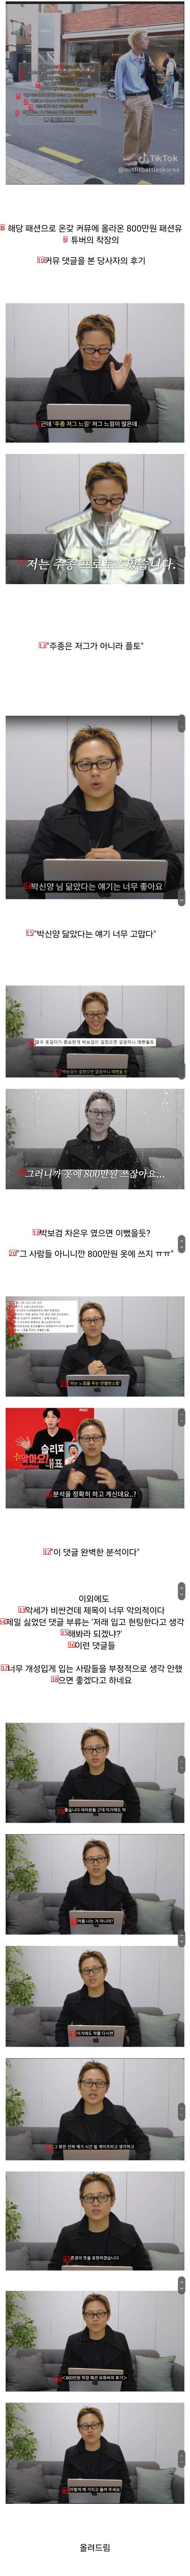 커뮤에서 화제였던 ''800만원 착장 패션 유튜버''의 후기